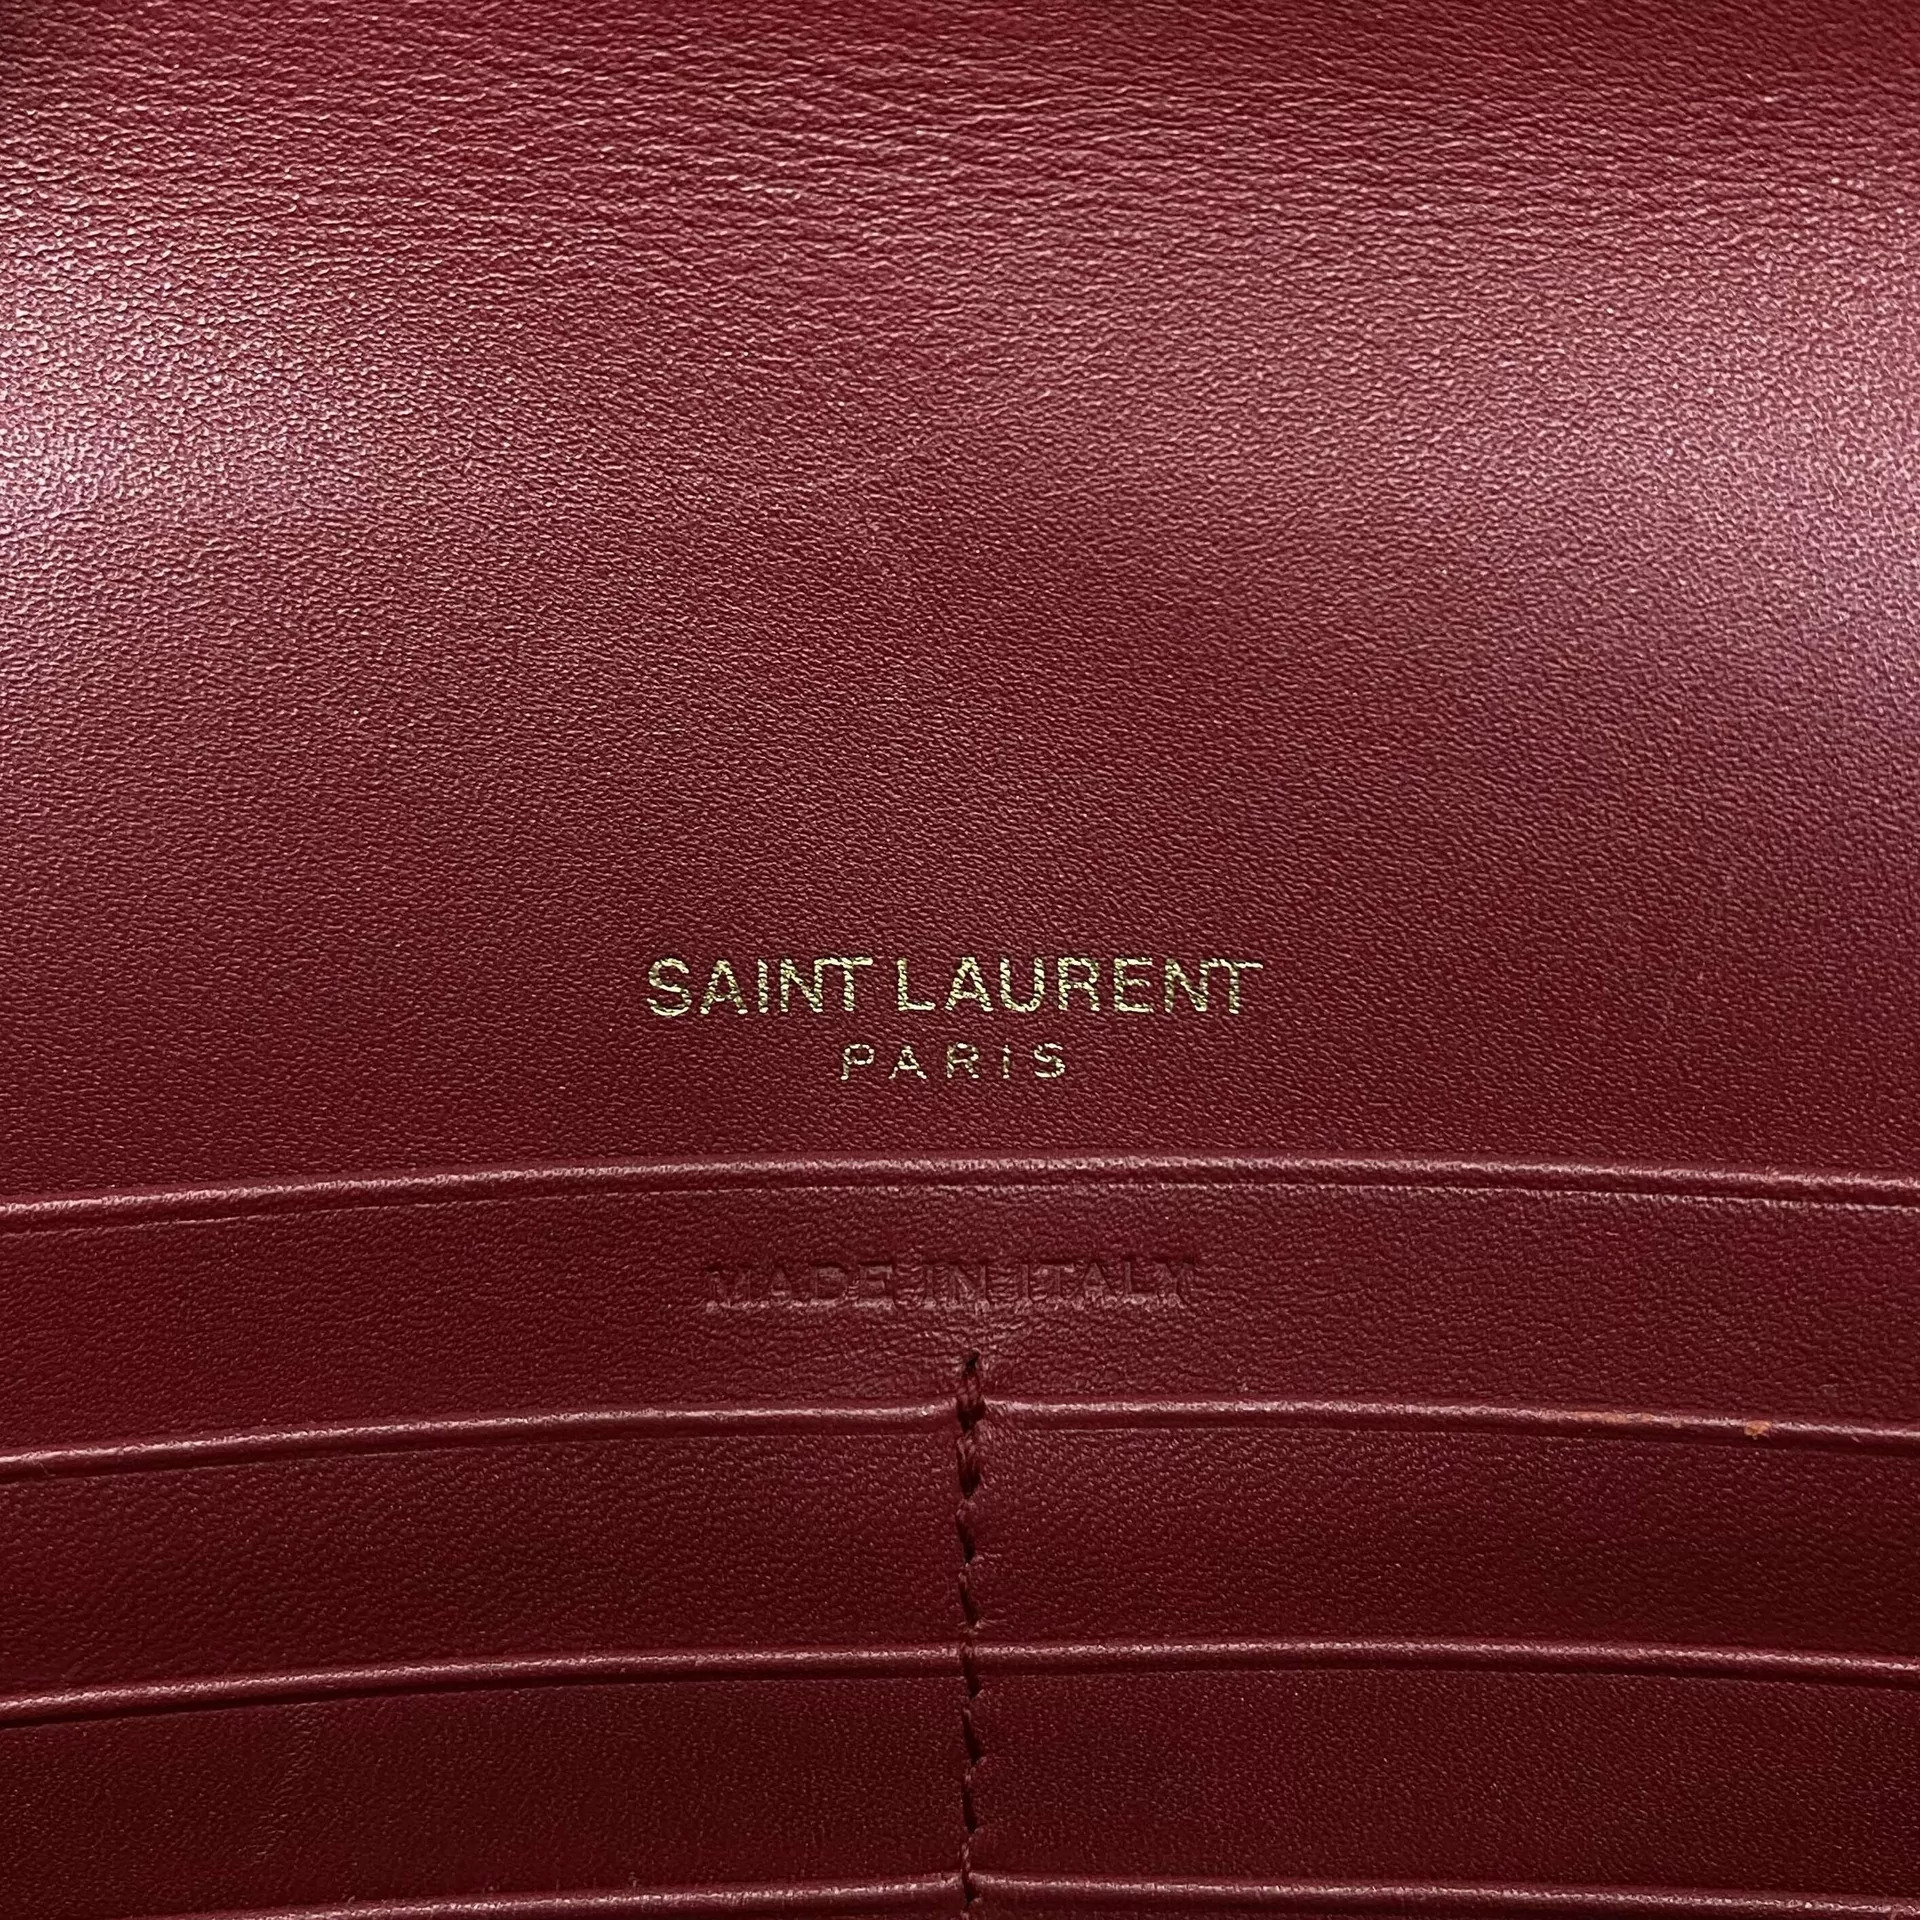 Bolsa Saint Laurent Kate Tassel Vermelha